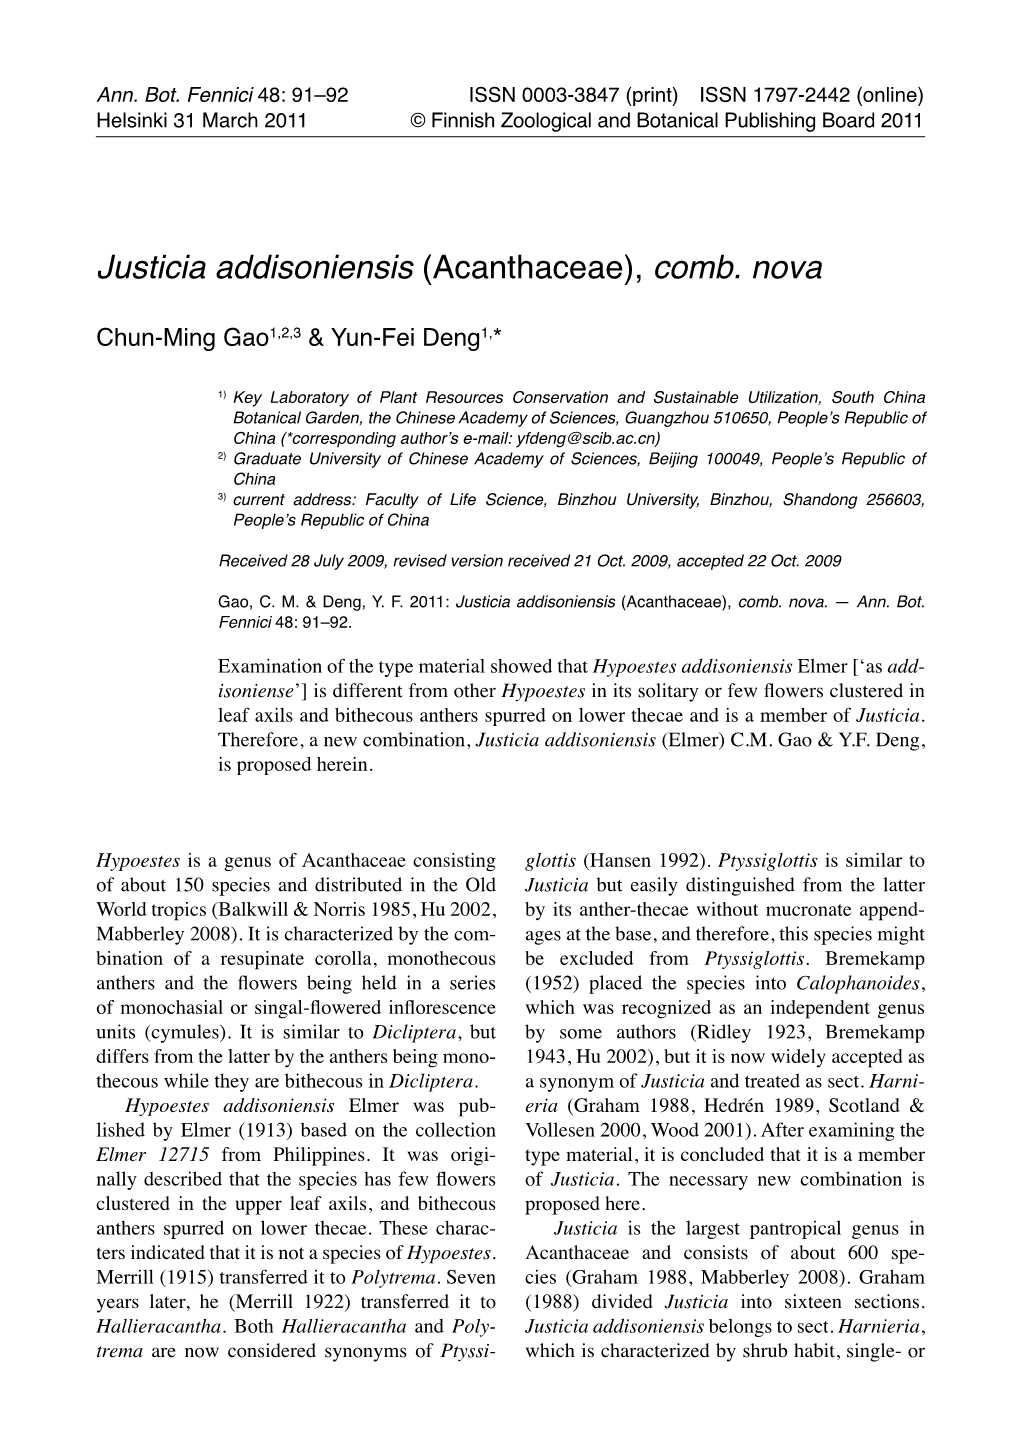 Justicia Addisoniensis (Acanthaceae), Comb. Nova